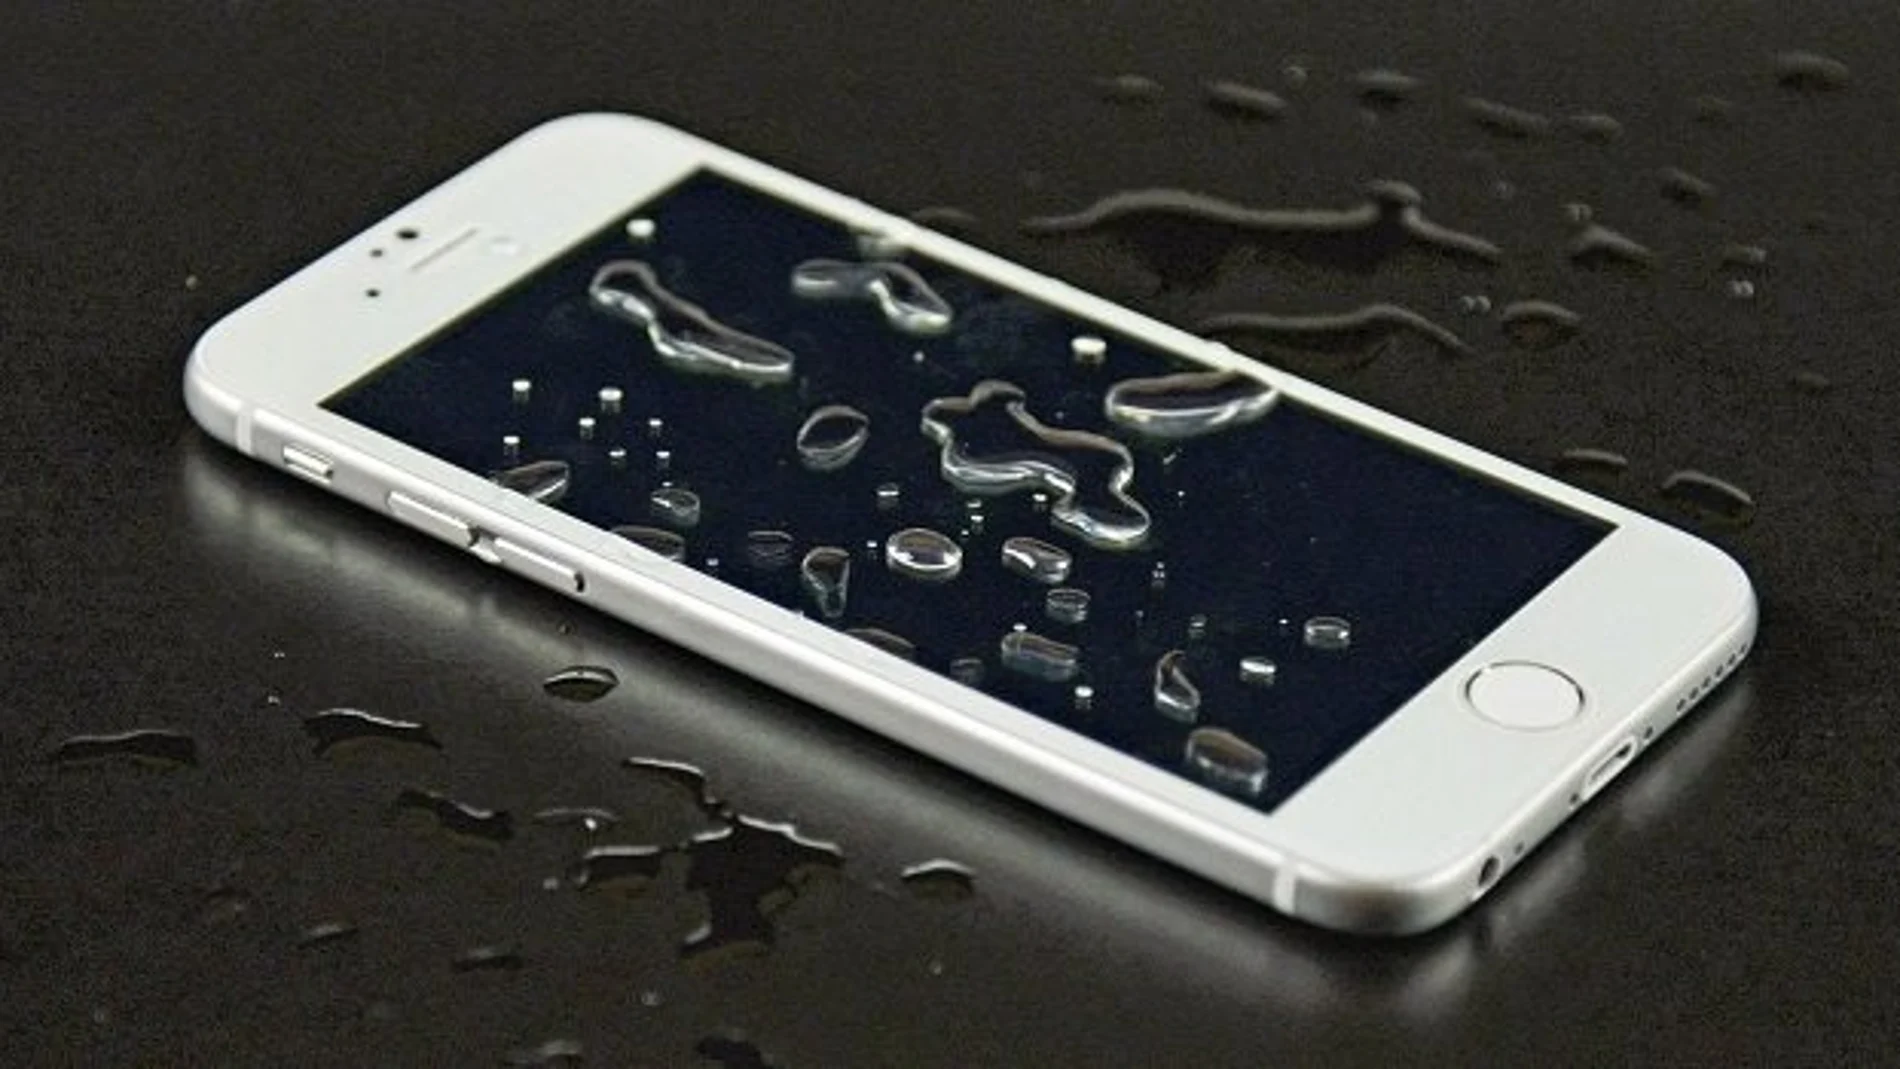 Teléfonos resistentes al agua, como el iPhone de la imagen, muy útiles en verano